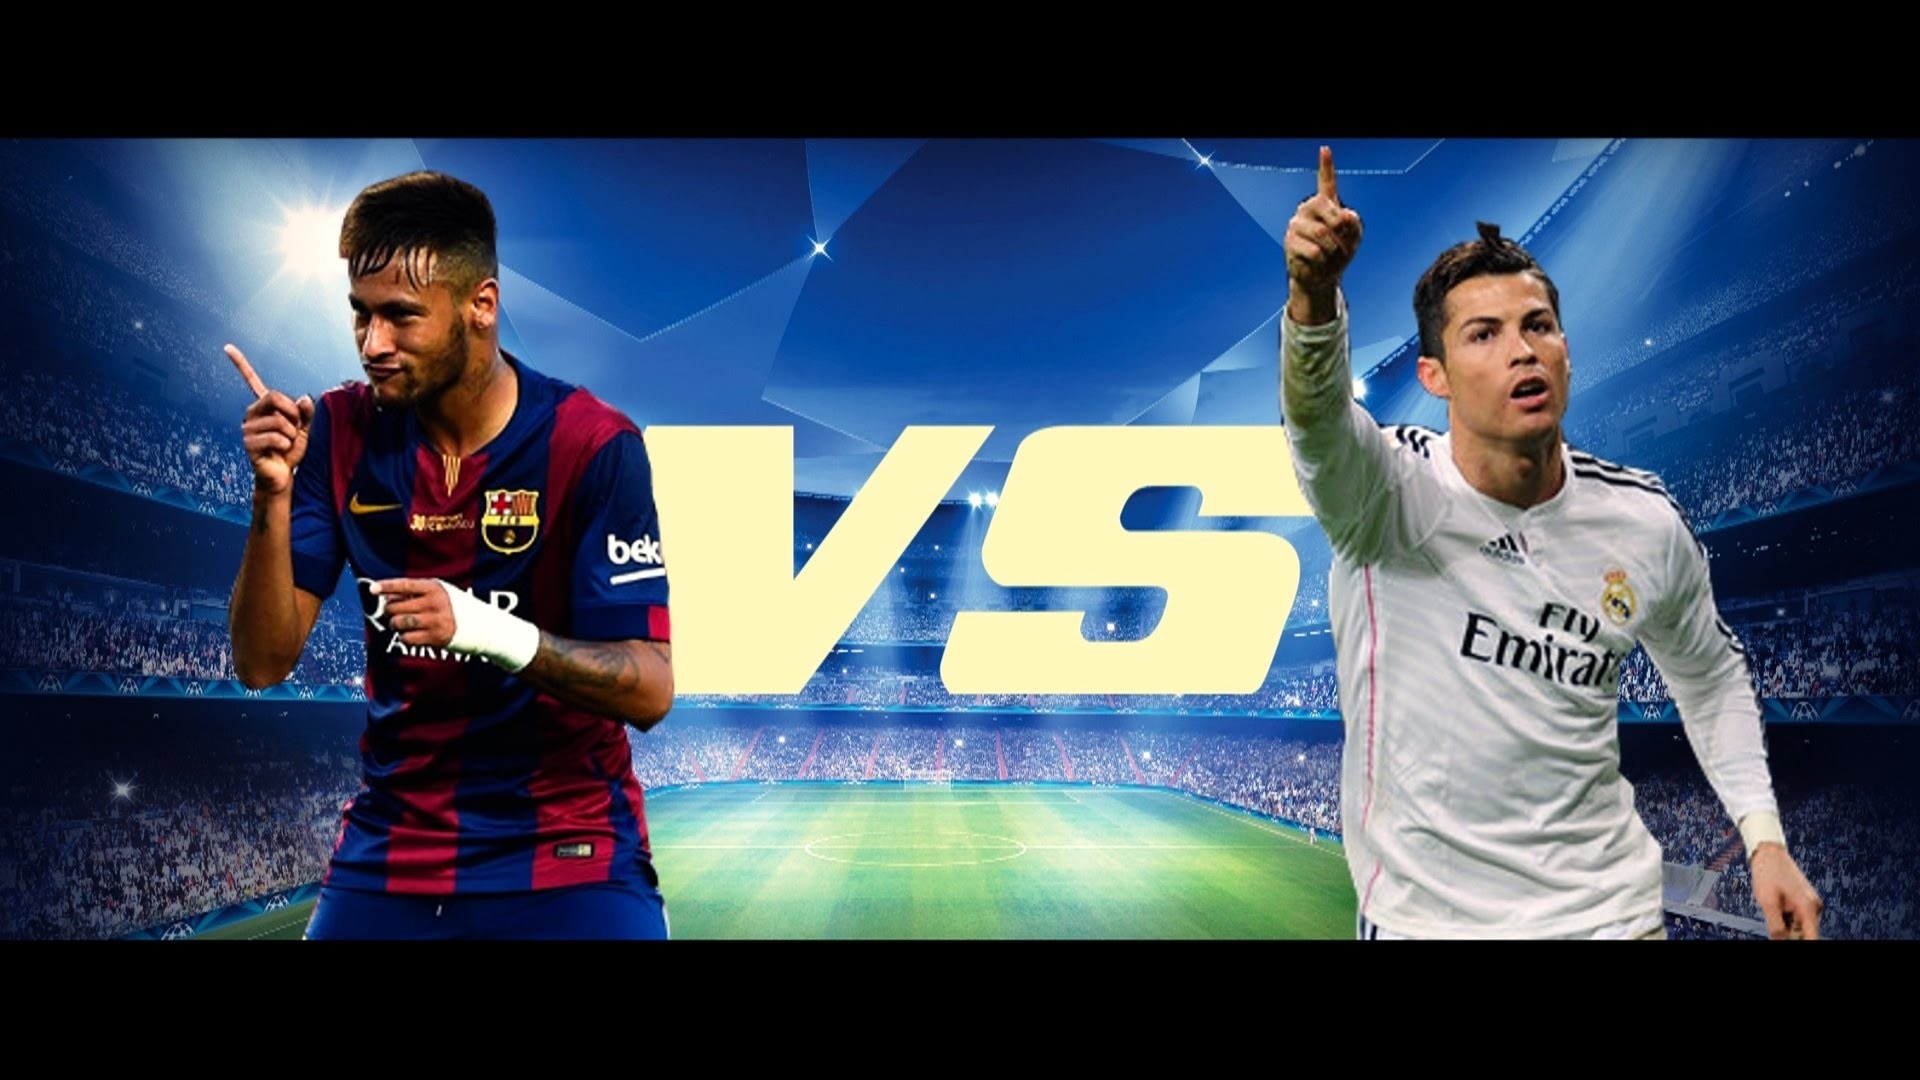 Ronaldo Vs Messi Wallpaper #cM8  Messi vs ronaldo, Ronaldo, Messi vs